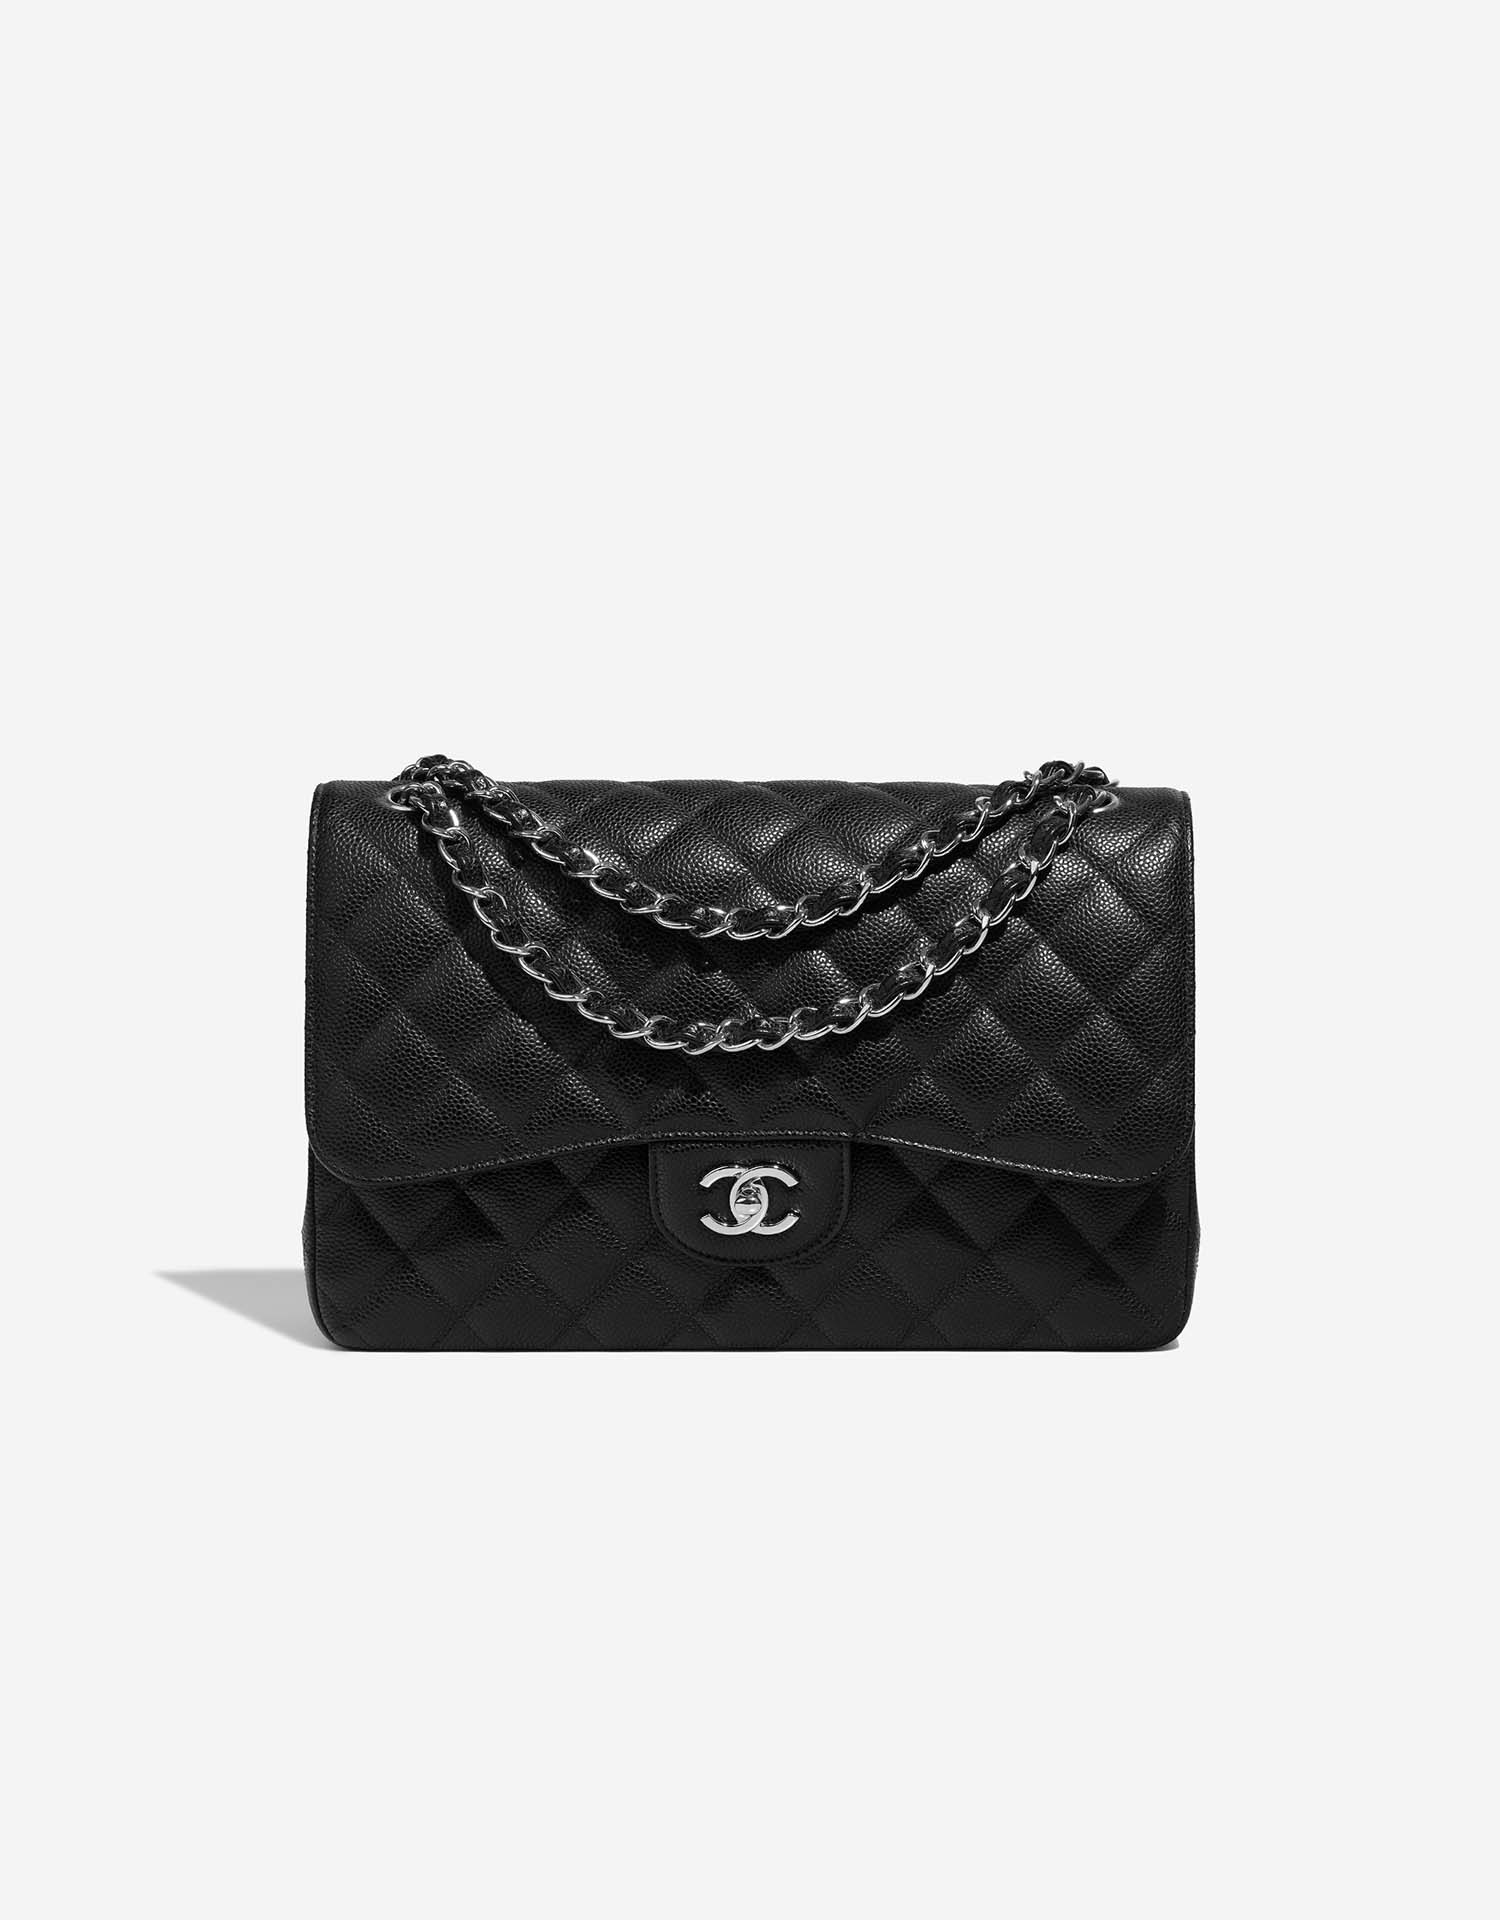 Chanel Timeless Jumbo Caviar Black | SACLÀB